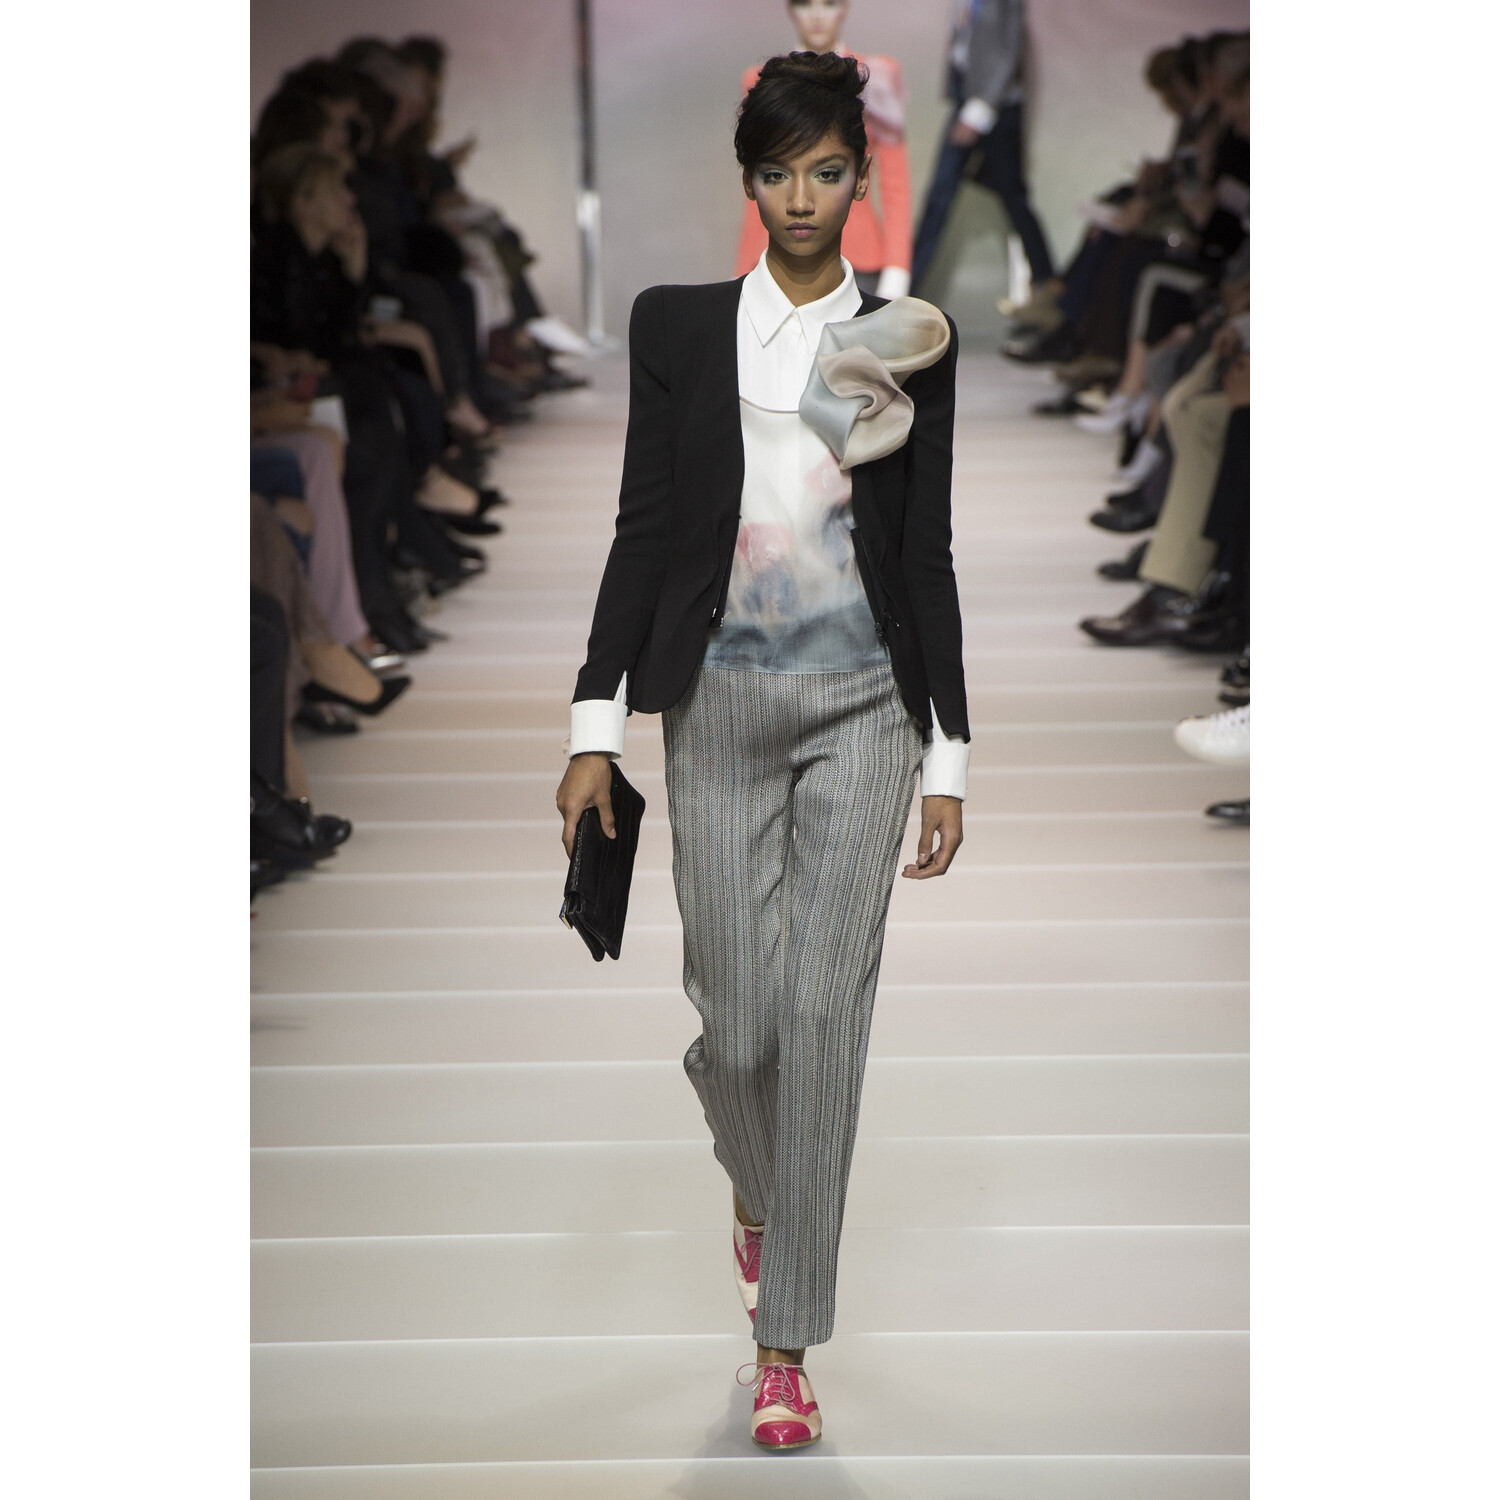 Фото Armani Prive Spring 2018 Couture Paris PFW коллекция 2018 Армани кутюр лето 2018 неделя высокой моды в Париже Mainstyles